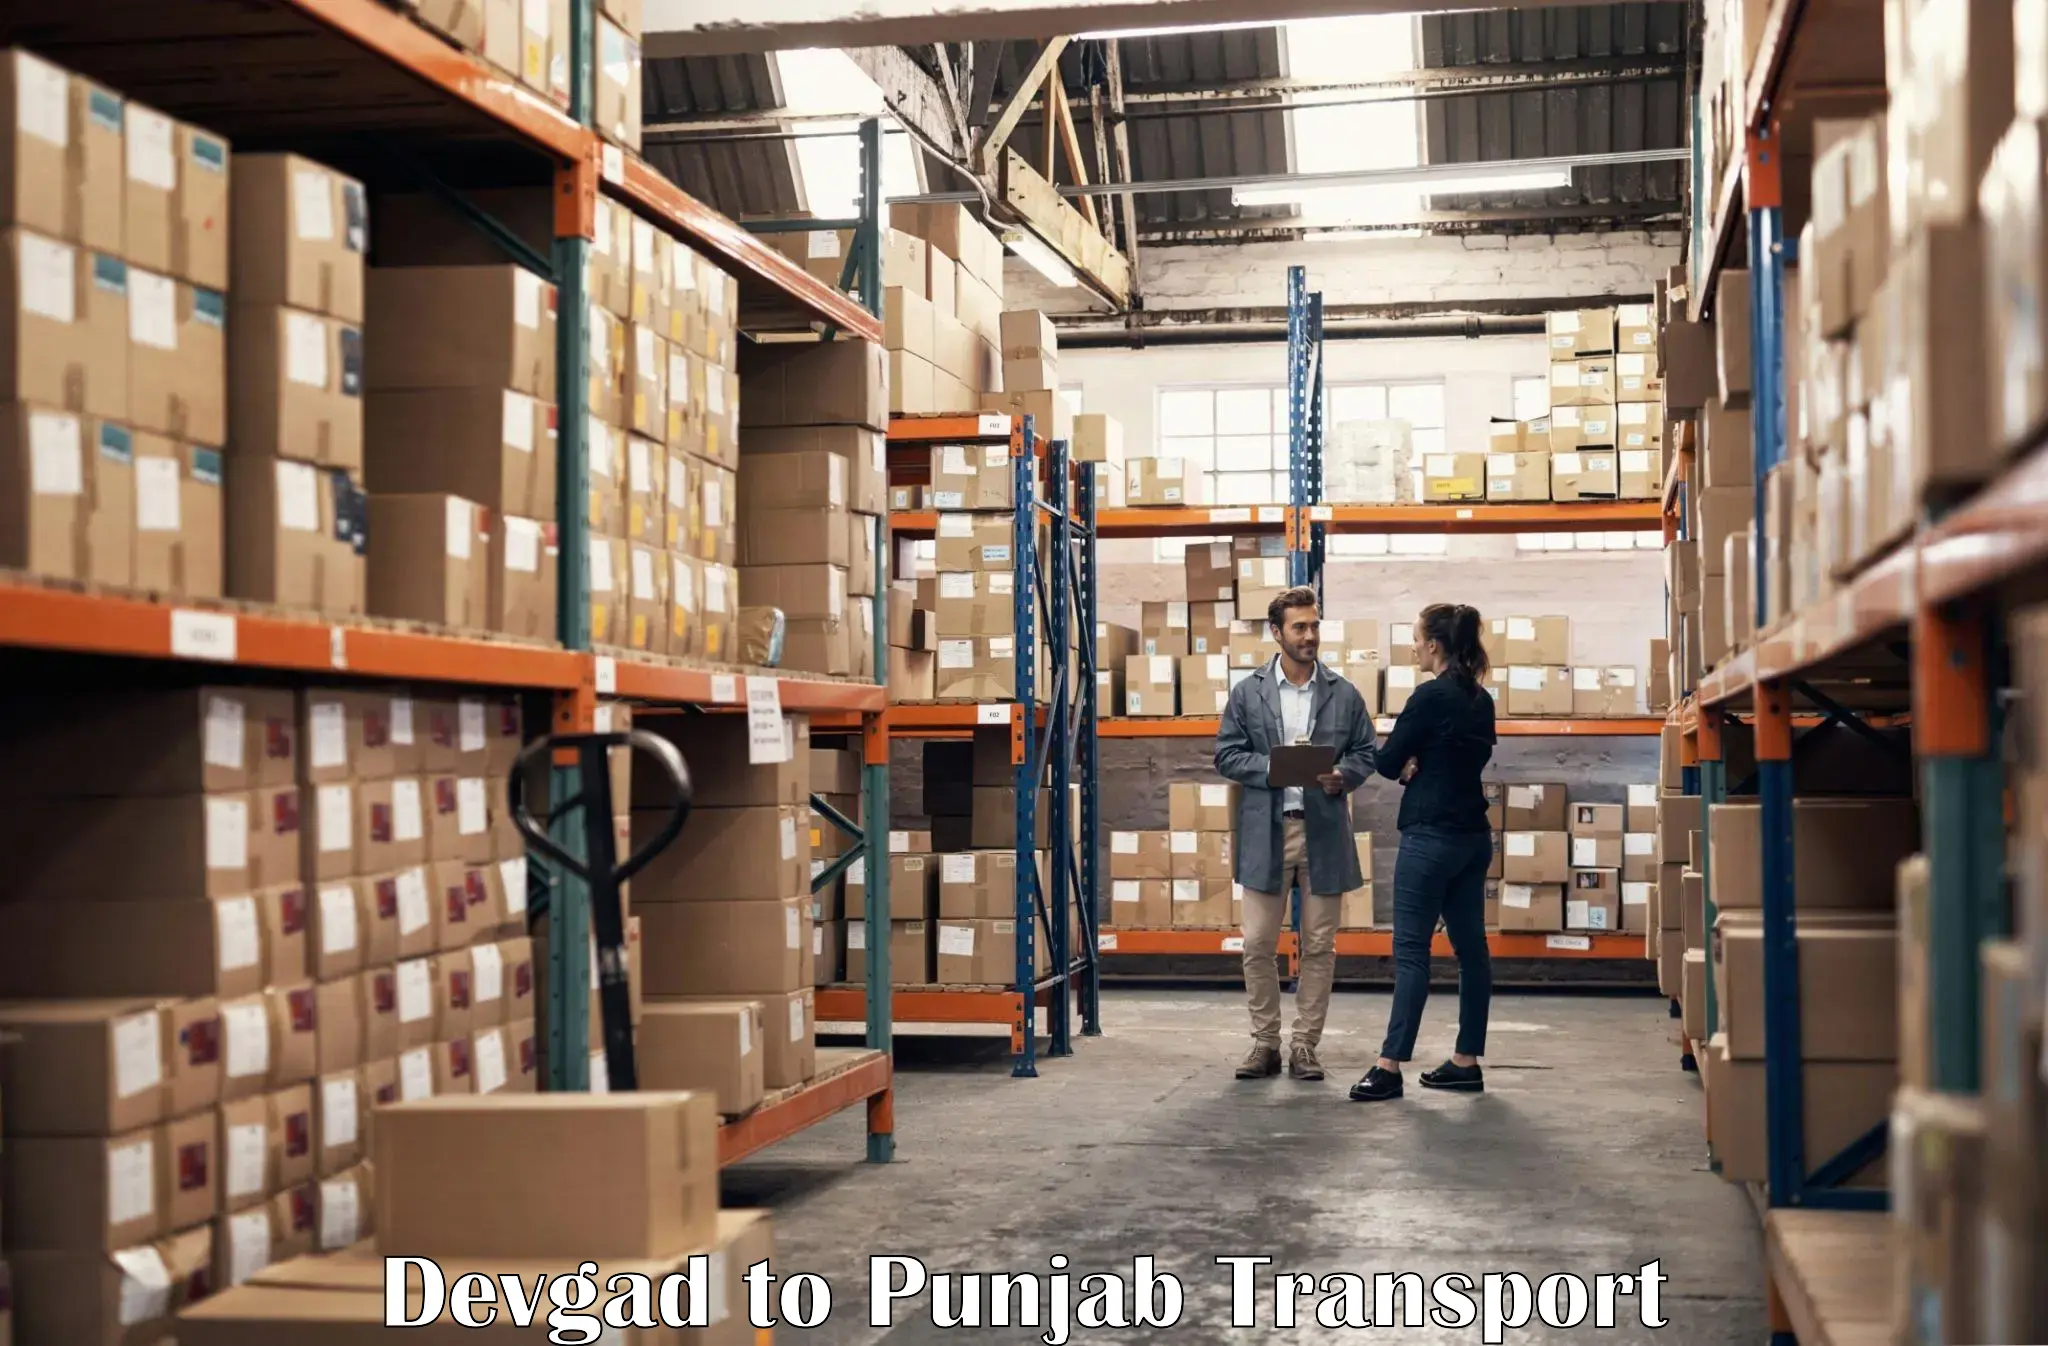 Furniture transport service Devgad to Mohali